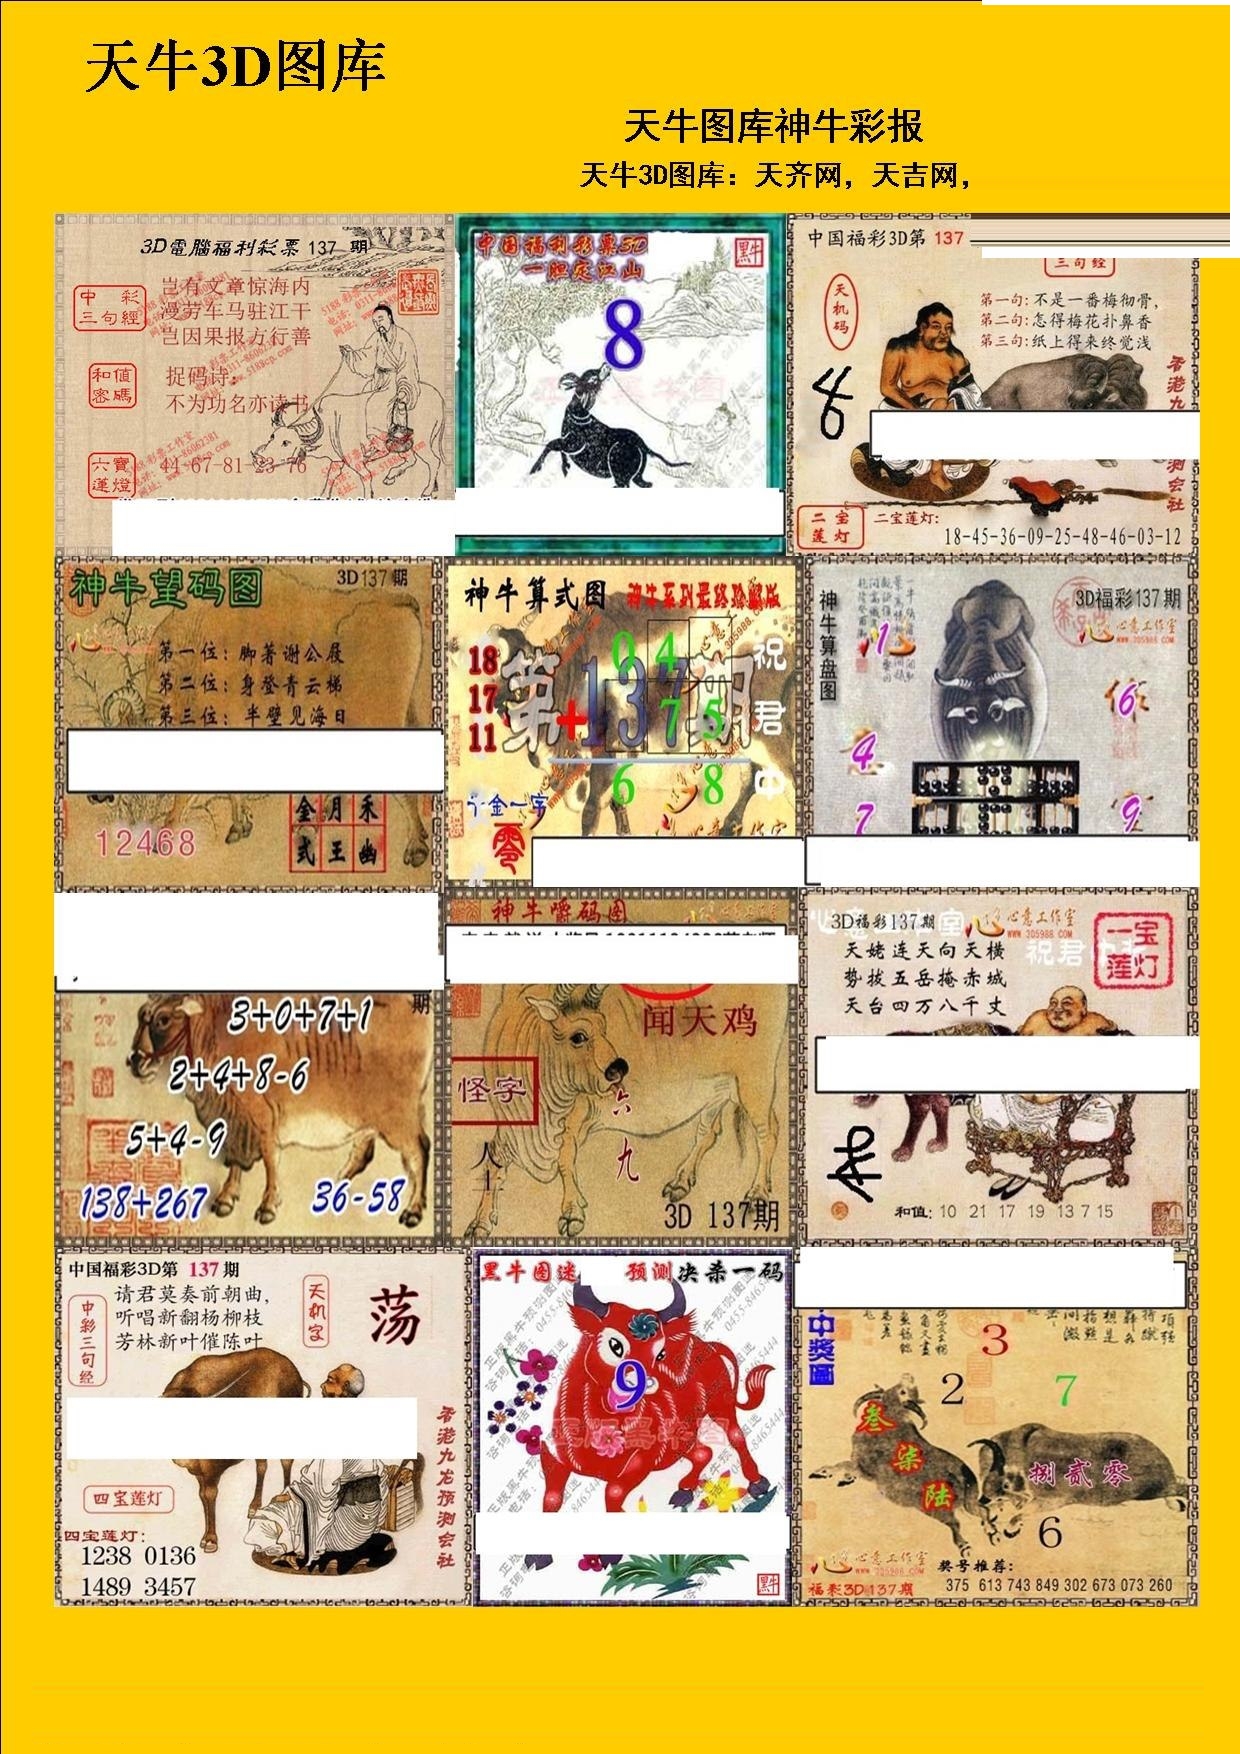 20137期福彩3d 天牛彩报图版系列 - 3d图库 - 微彩网